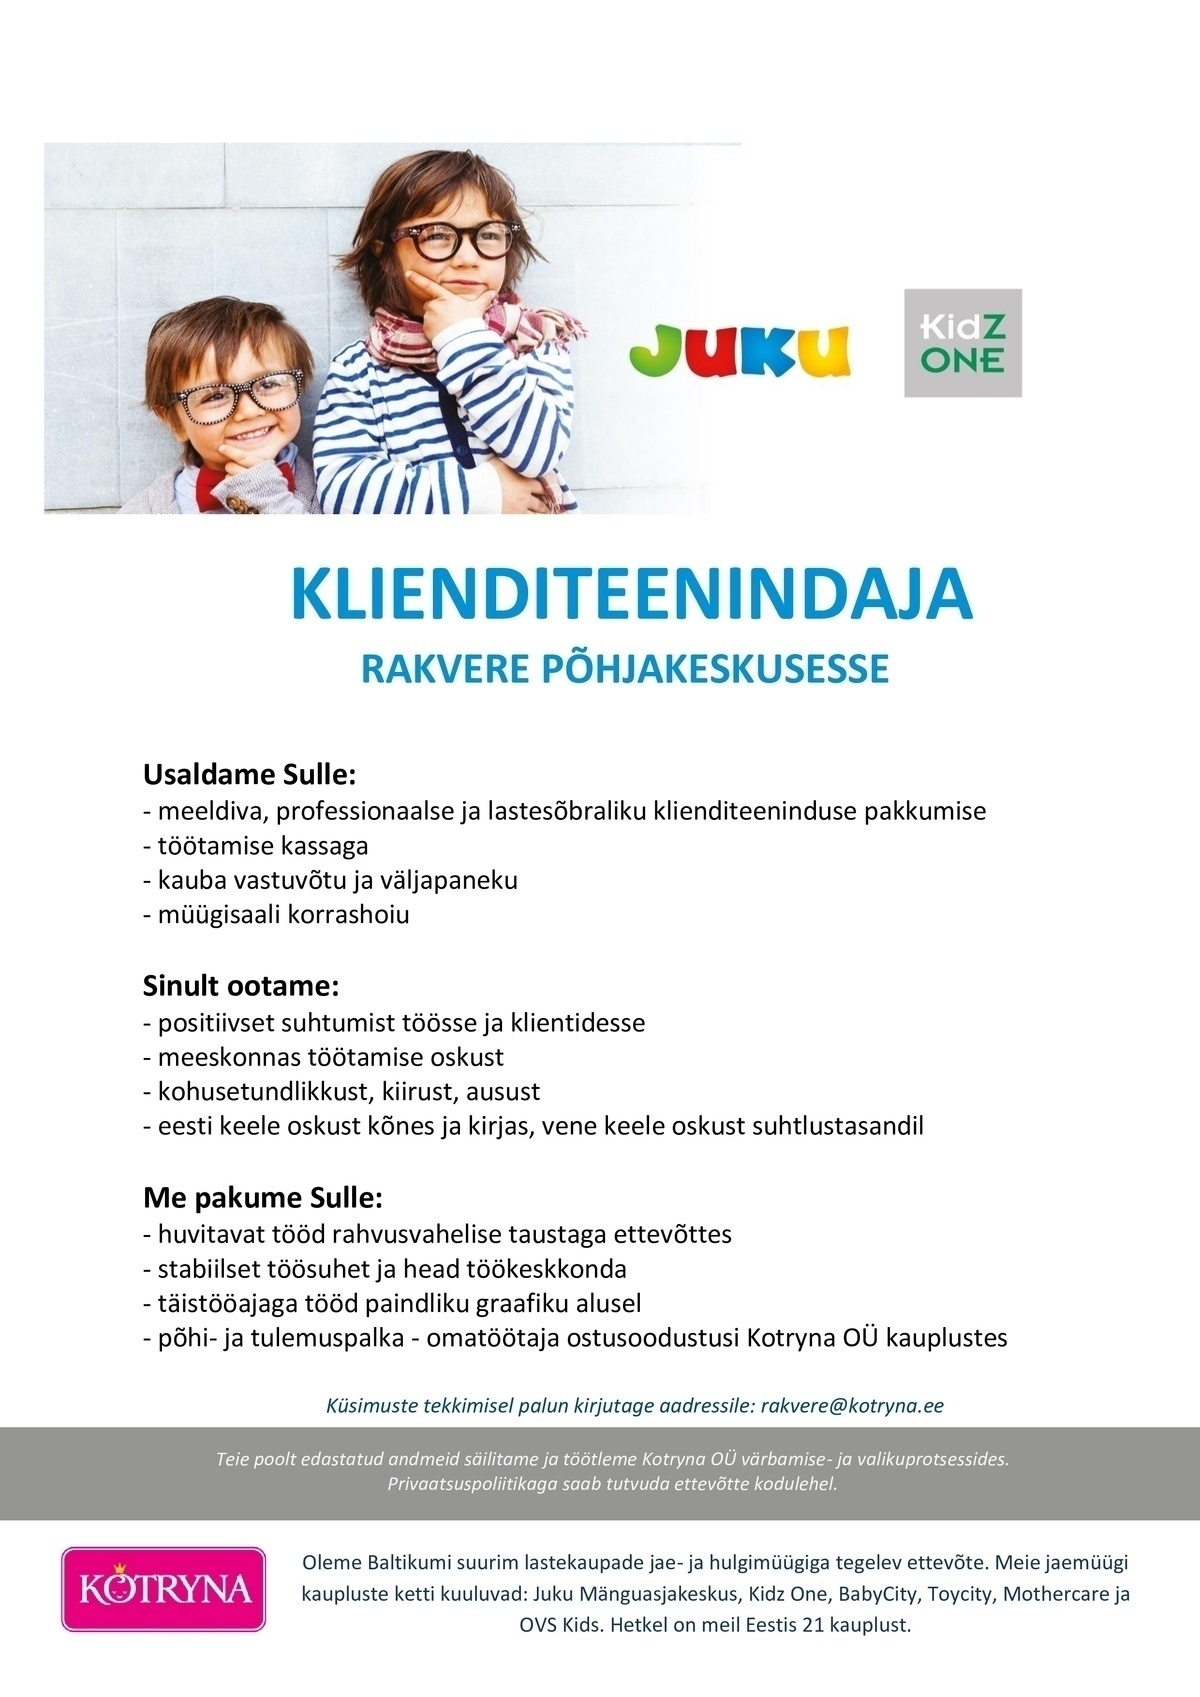 Kotryna OÜ Rakvere Juku/KidzOne klienditeenindaja